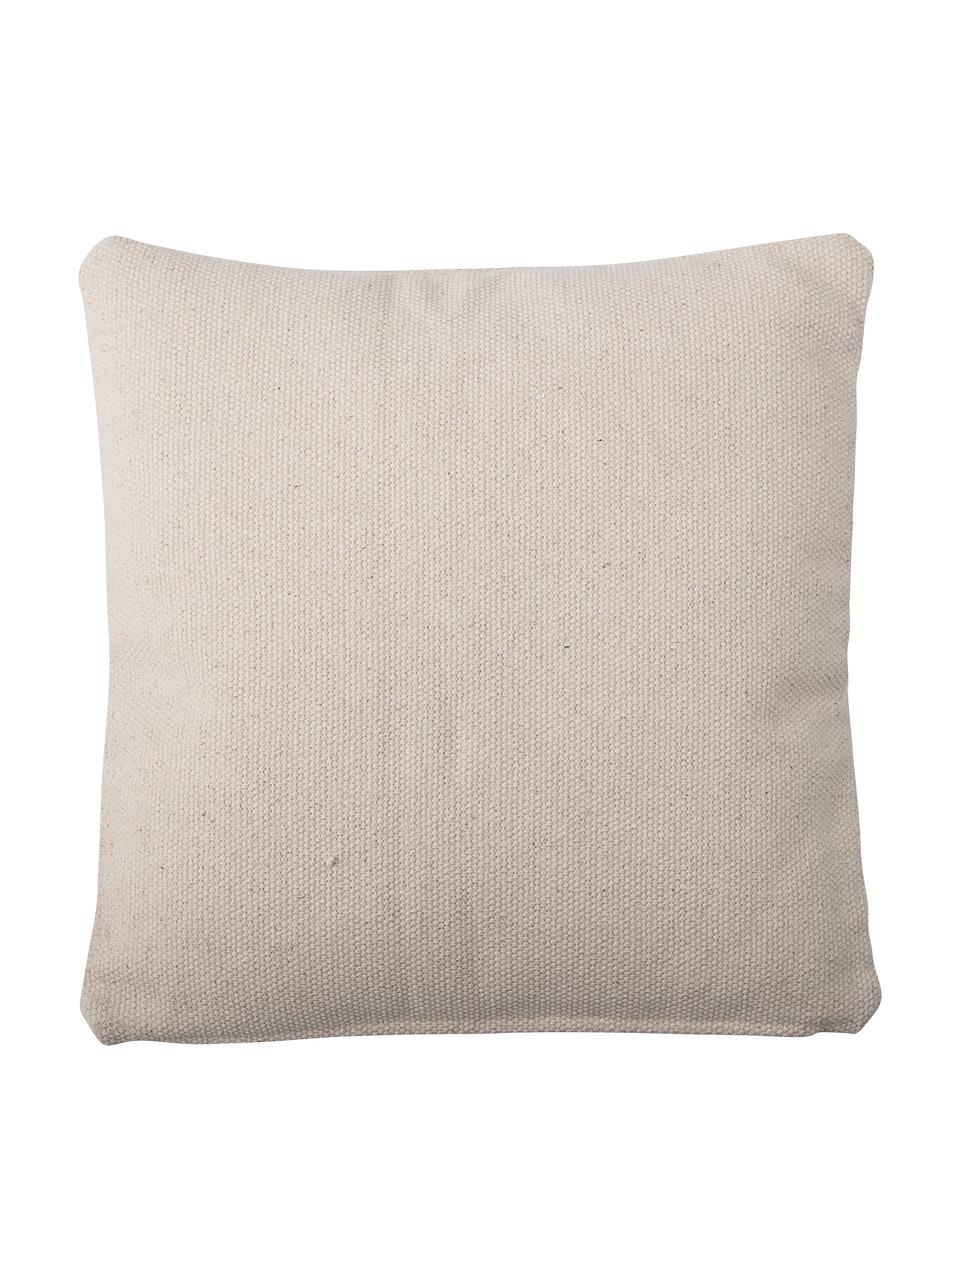 Poduszka z wypełnieniem Nata, Tapicerka: 100% bawełna, Beżowy, musztardowy, S 45 x D 45 cm